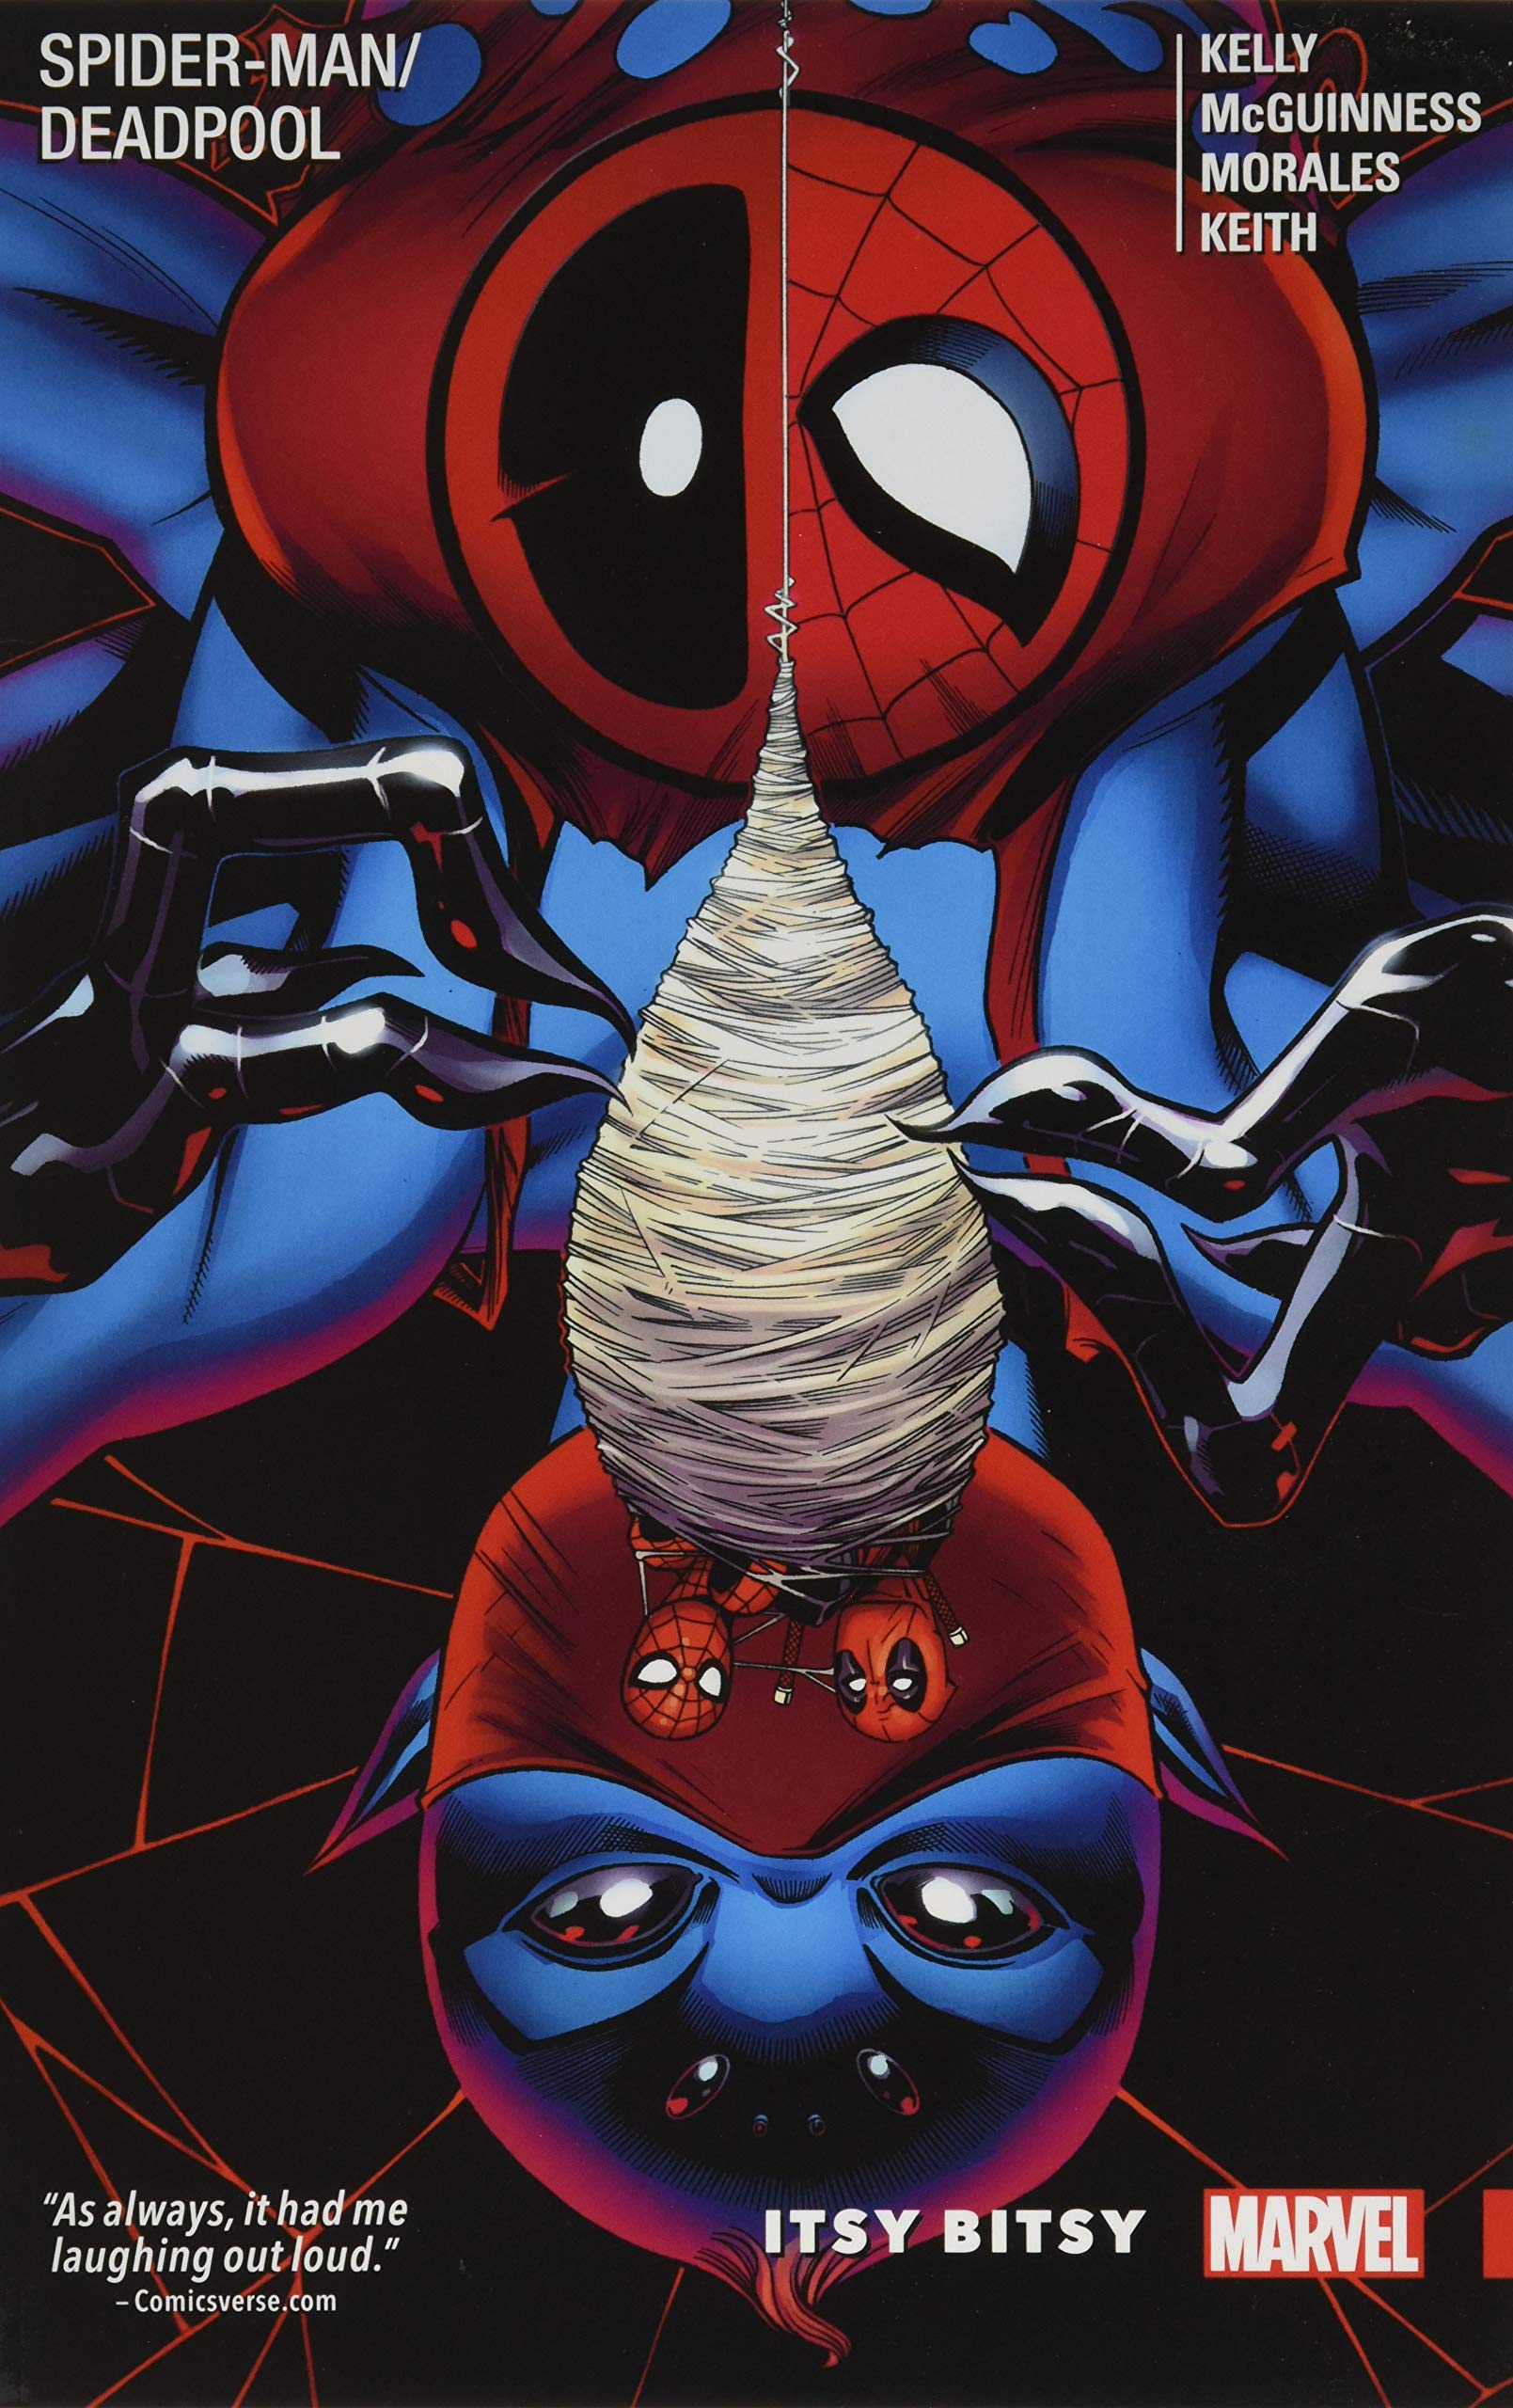 Mua Spider-Man/Deadpool Vol. 3: Itsy Bitsy trên Amazon Mỹ chính hãng 2023 |  Fado